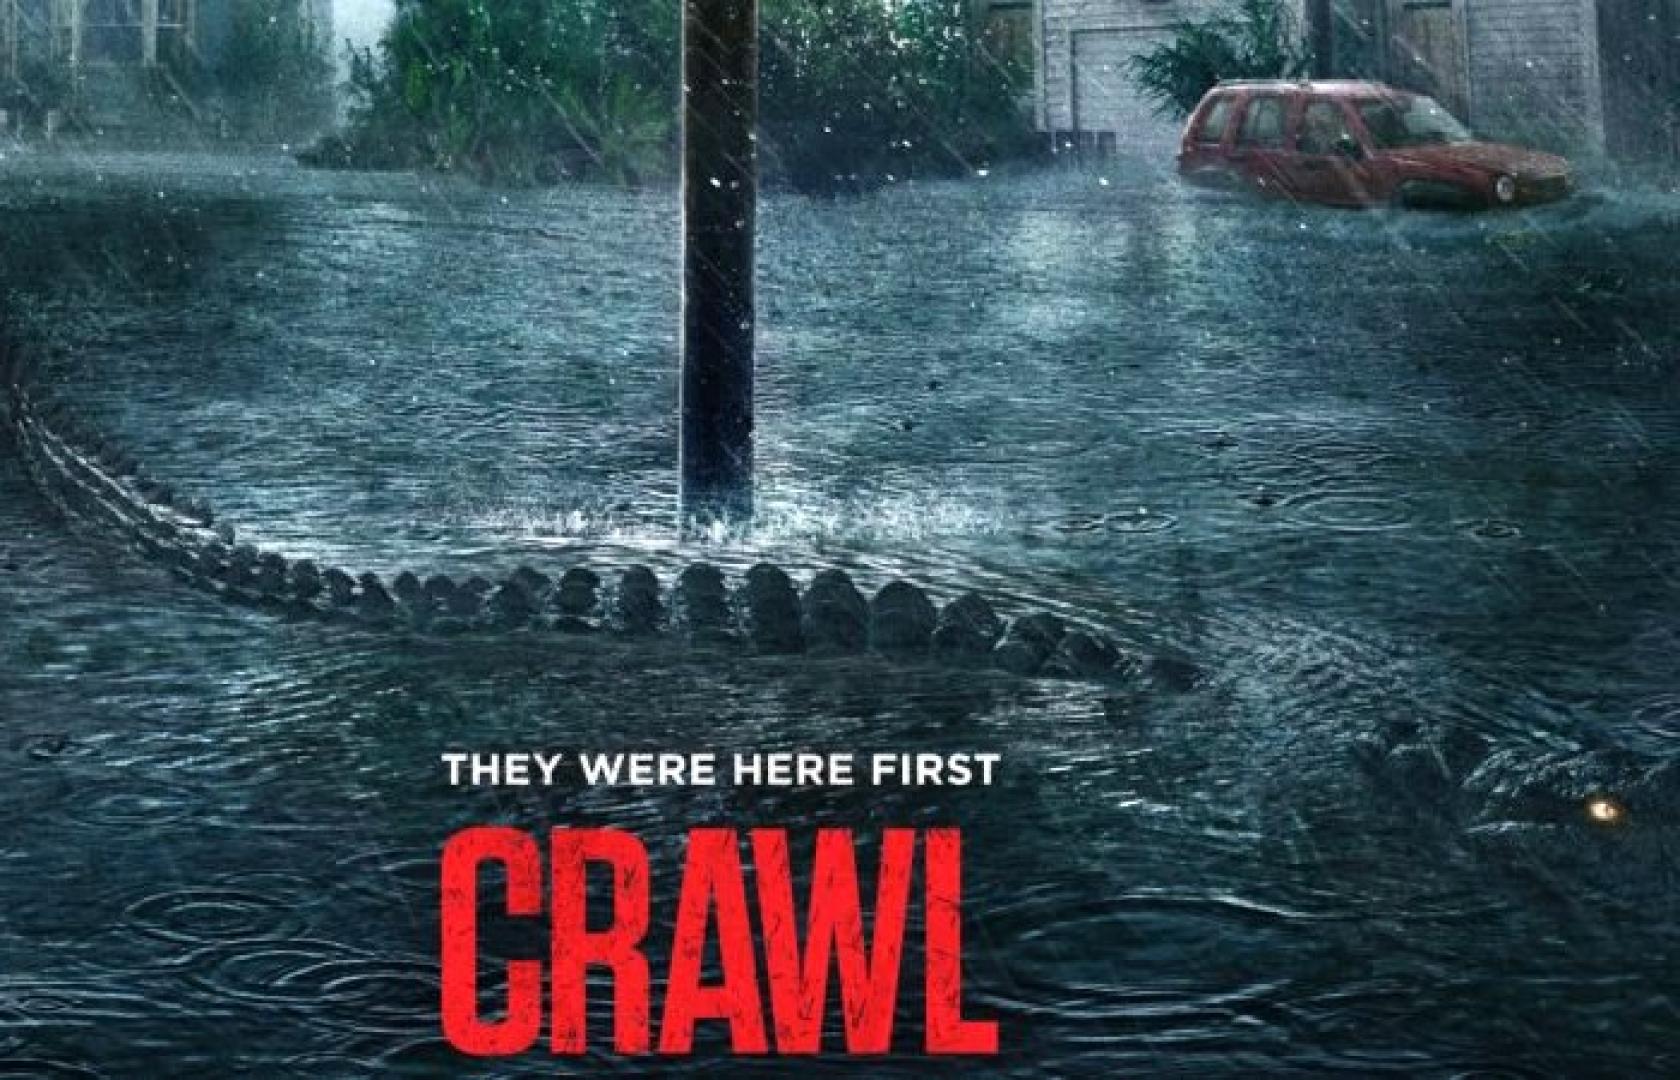 Crawl / Préda (2019)